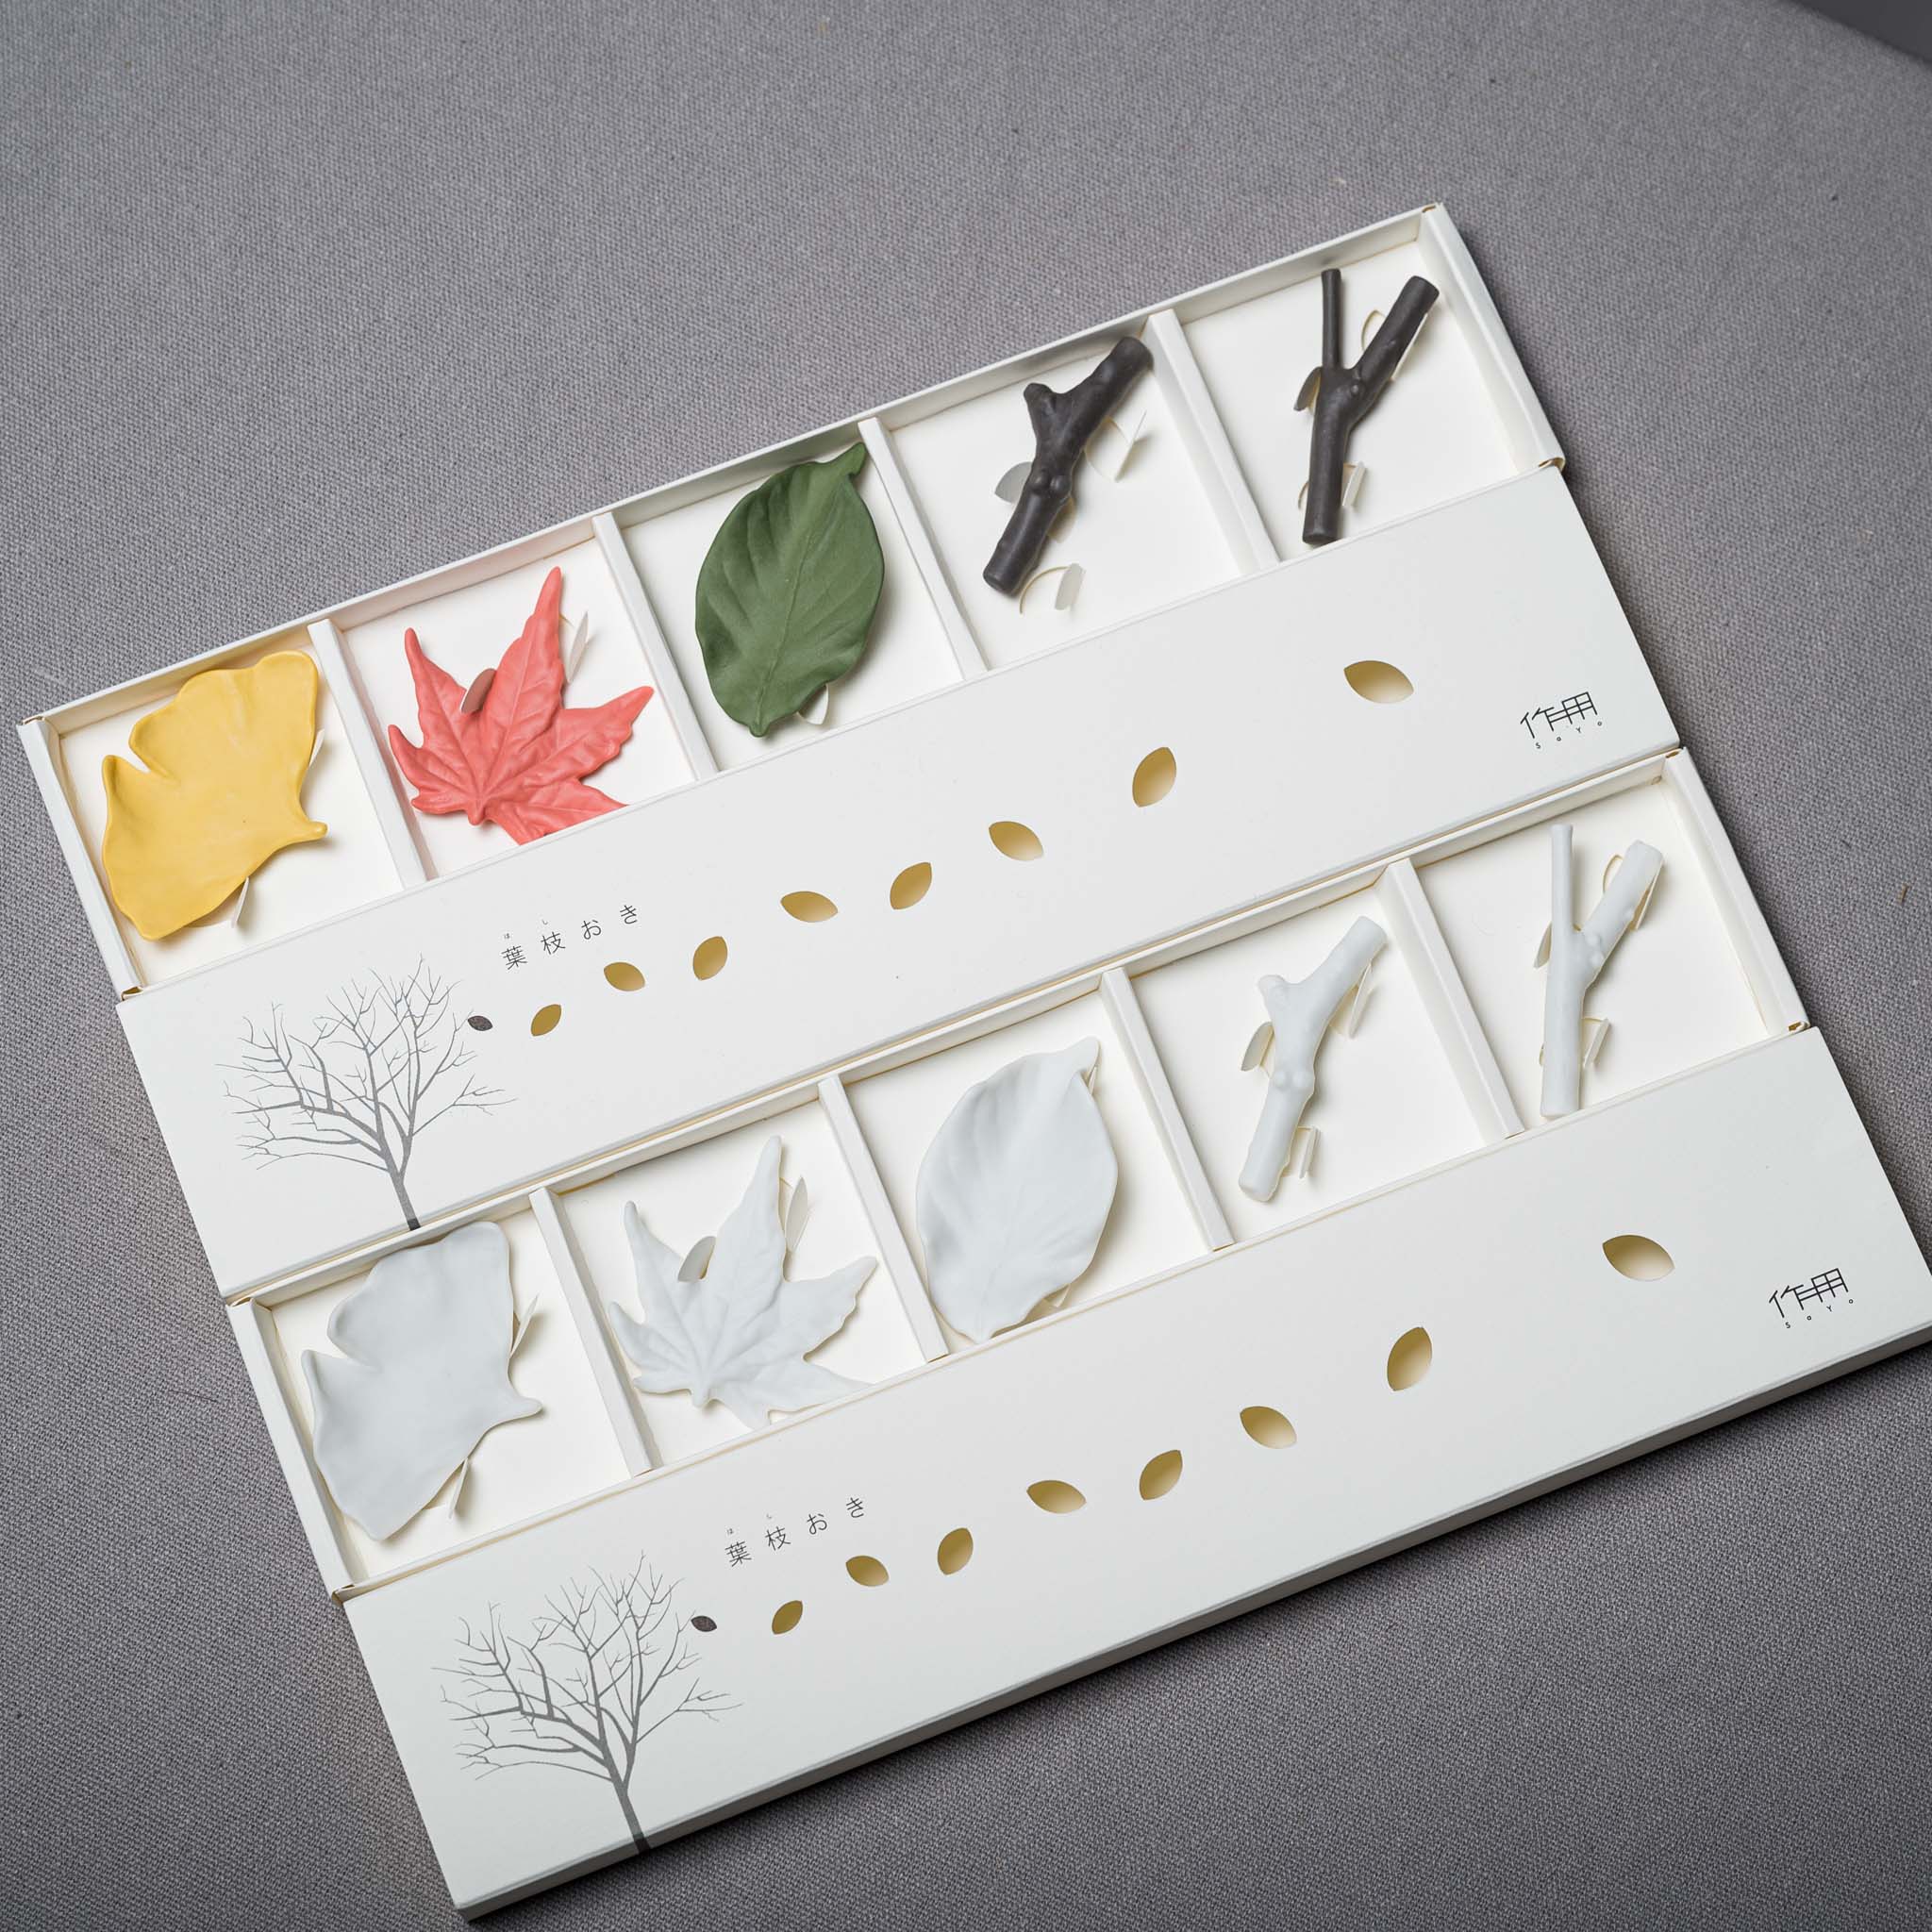 Leaf Chopstick Rest Gift Pack - Set of 5 / White